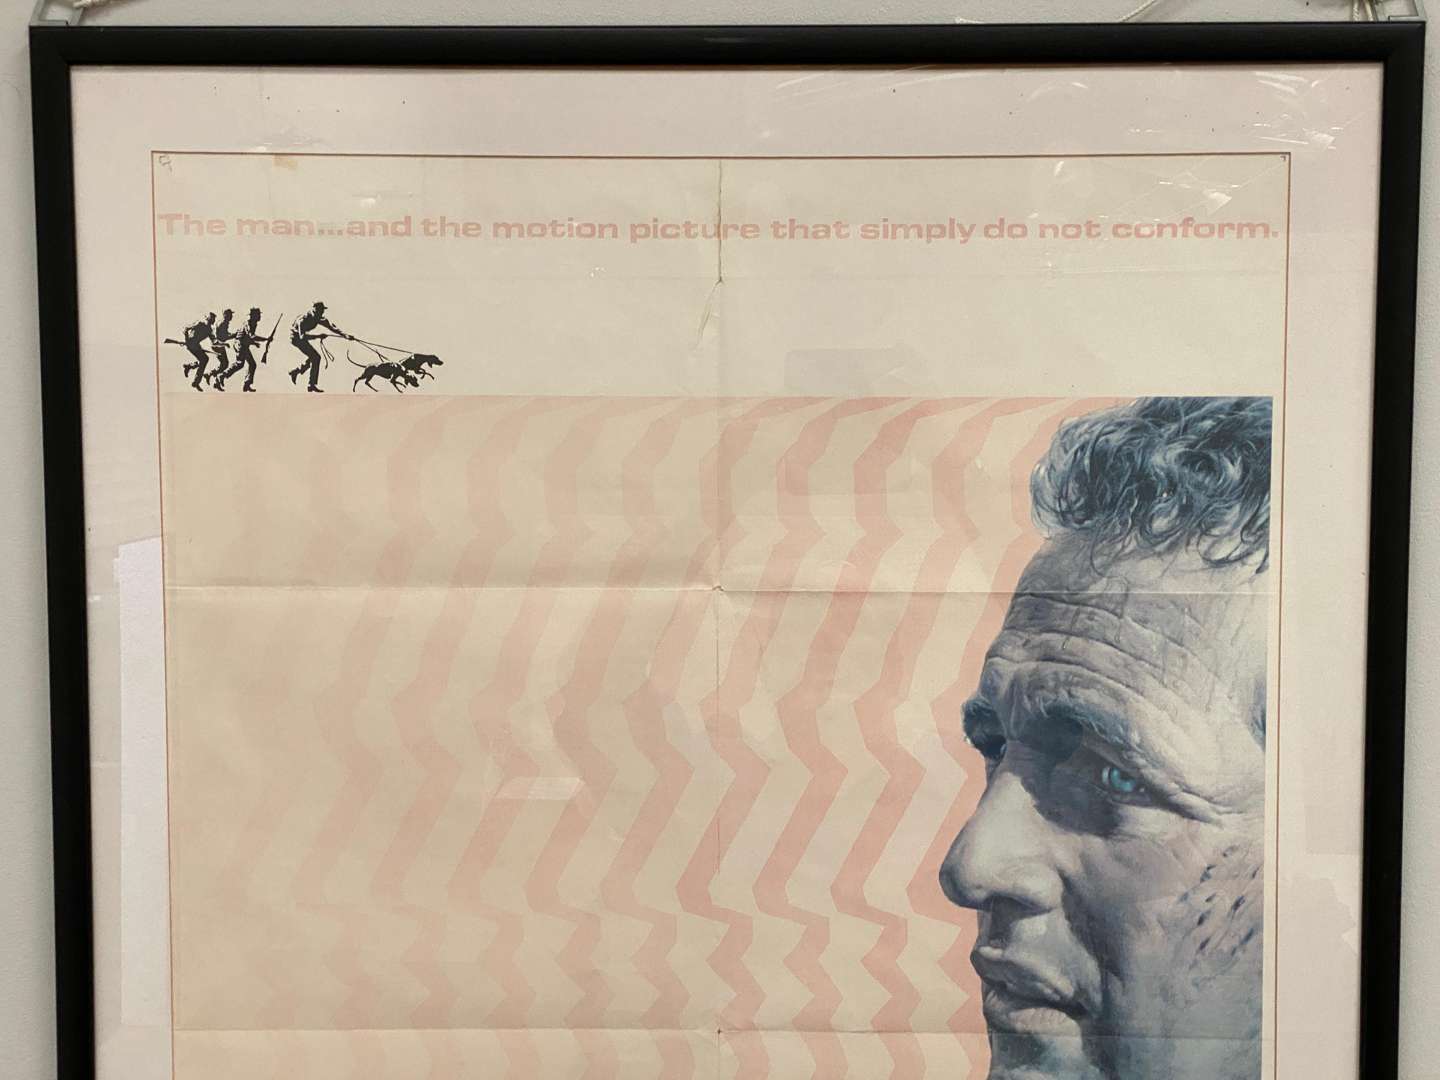 <p>“COOL HAND LUKE”, 1967, Paul Newman, a framed, original film poster</p>